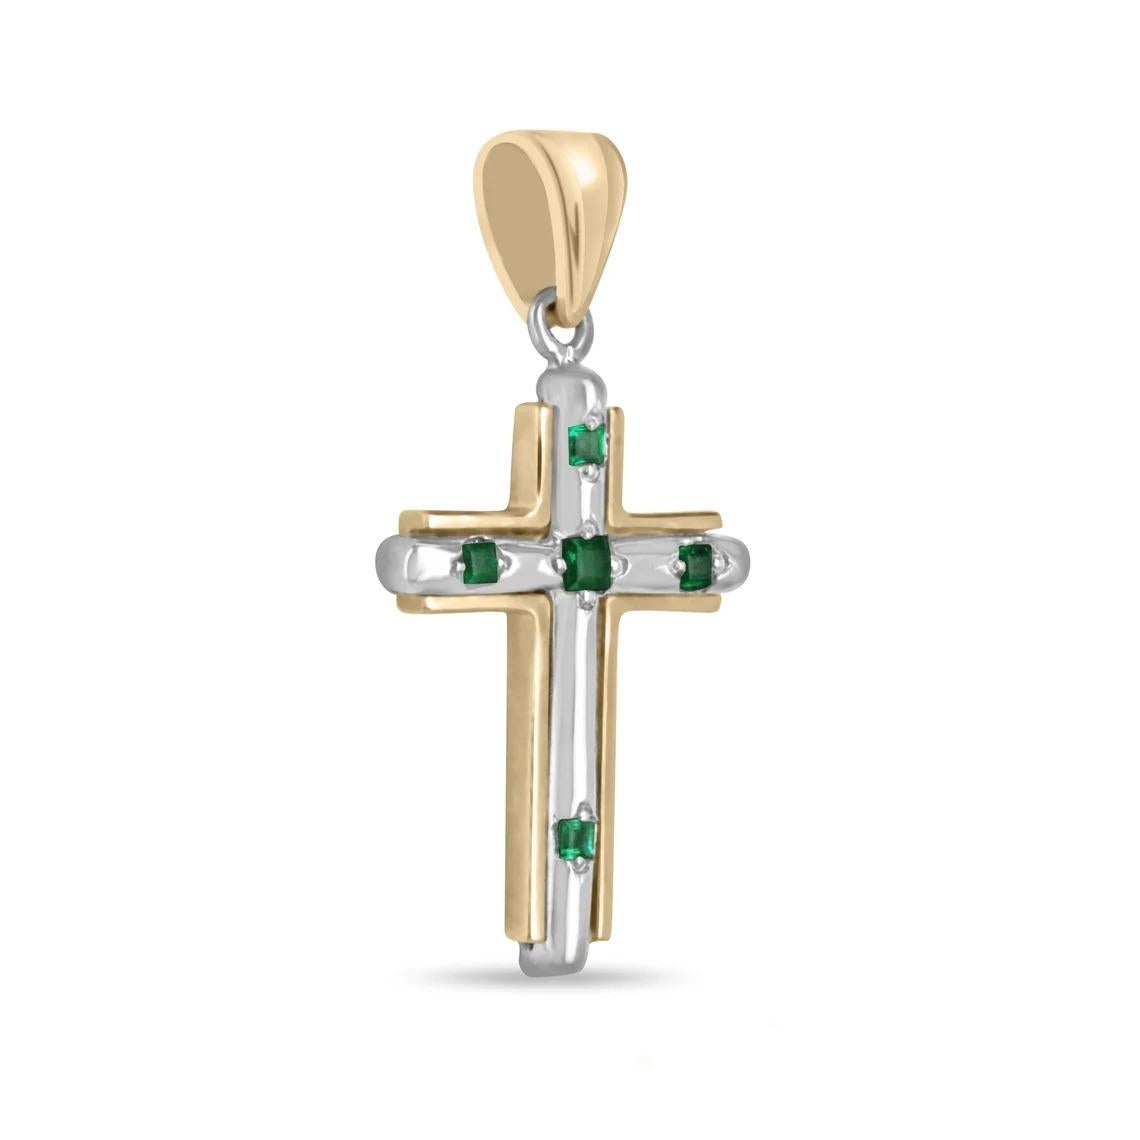 Das exquisite Kreuz aus kolumbianischem Smaragdgold ist ein Zeugnis für Schönheit und Handwerkskunst. Fünf Smaragde im Prinzessinnenschliff zieren jede Spitze des Kreuzes und strahlen mit ihrem satten, grünen Farbton Eleganz aus. Das Herzstück